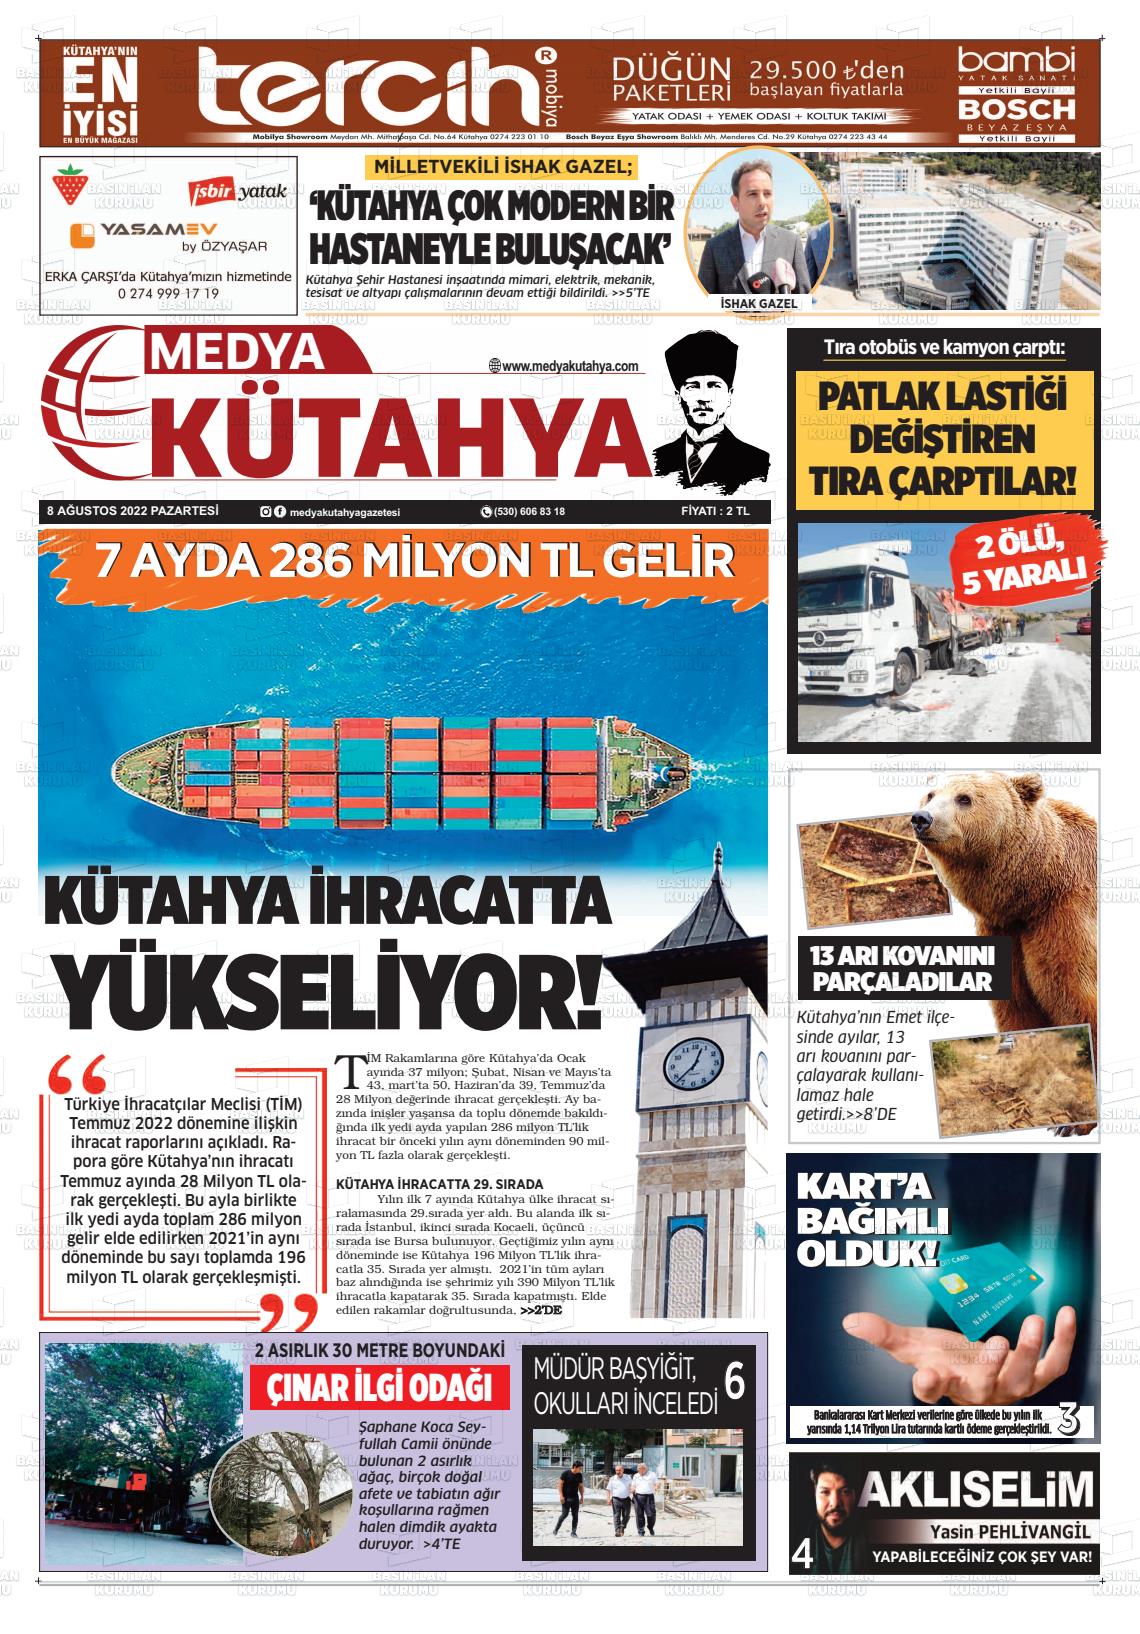 08 Ağustos 2022 Medya Kütahya Gazete Manşeti